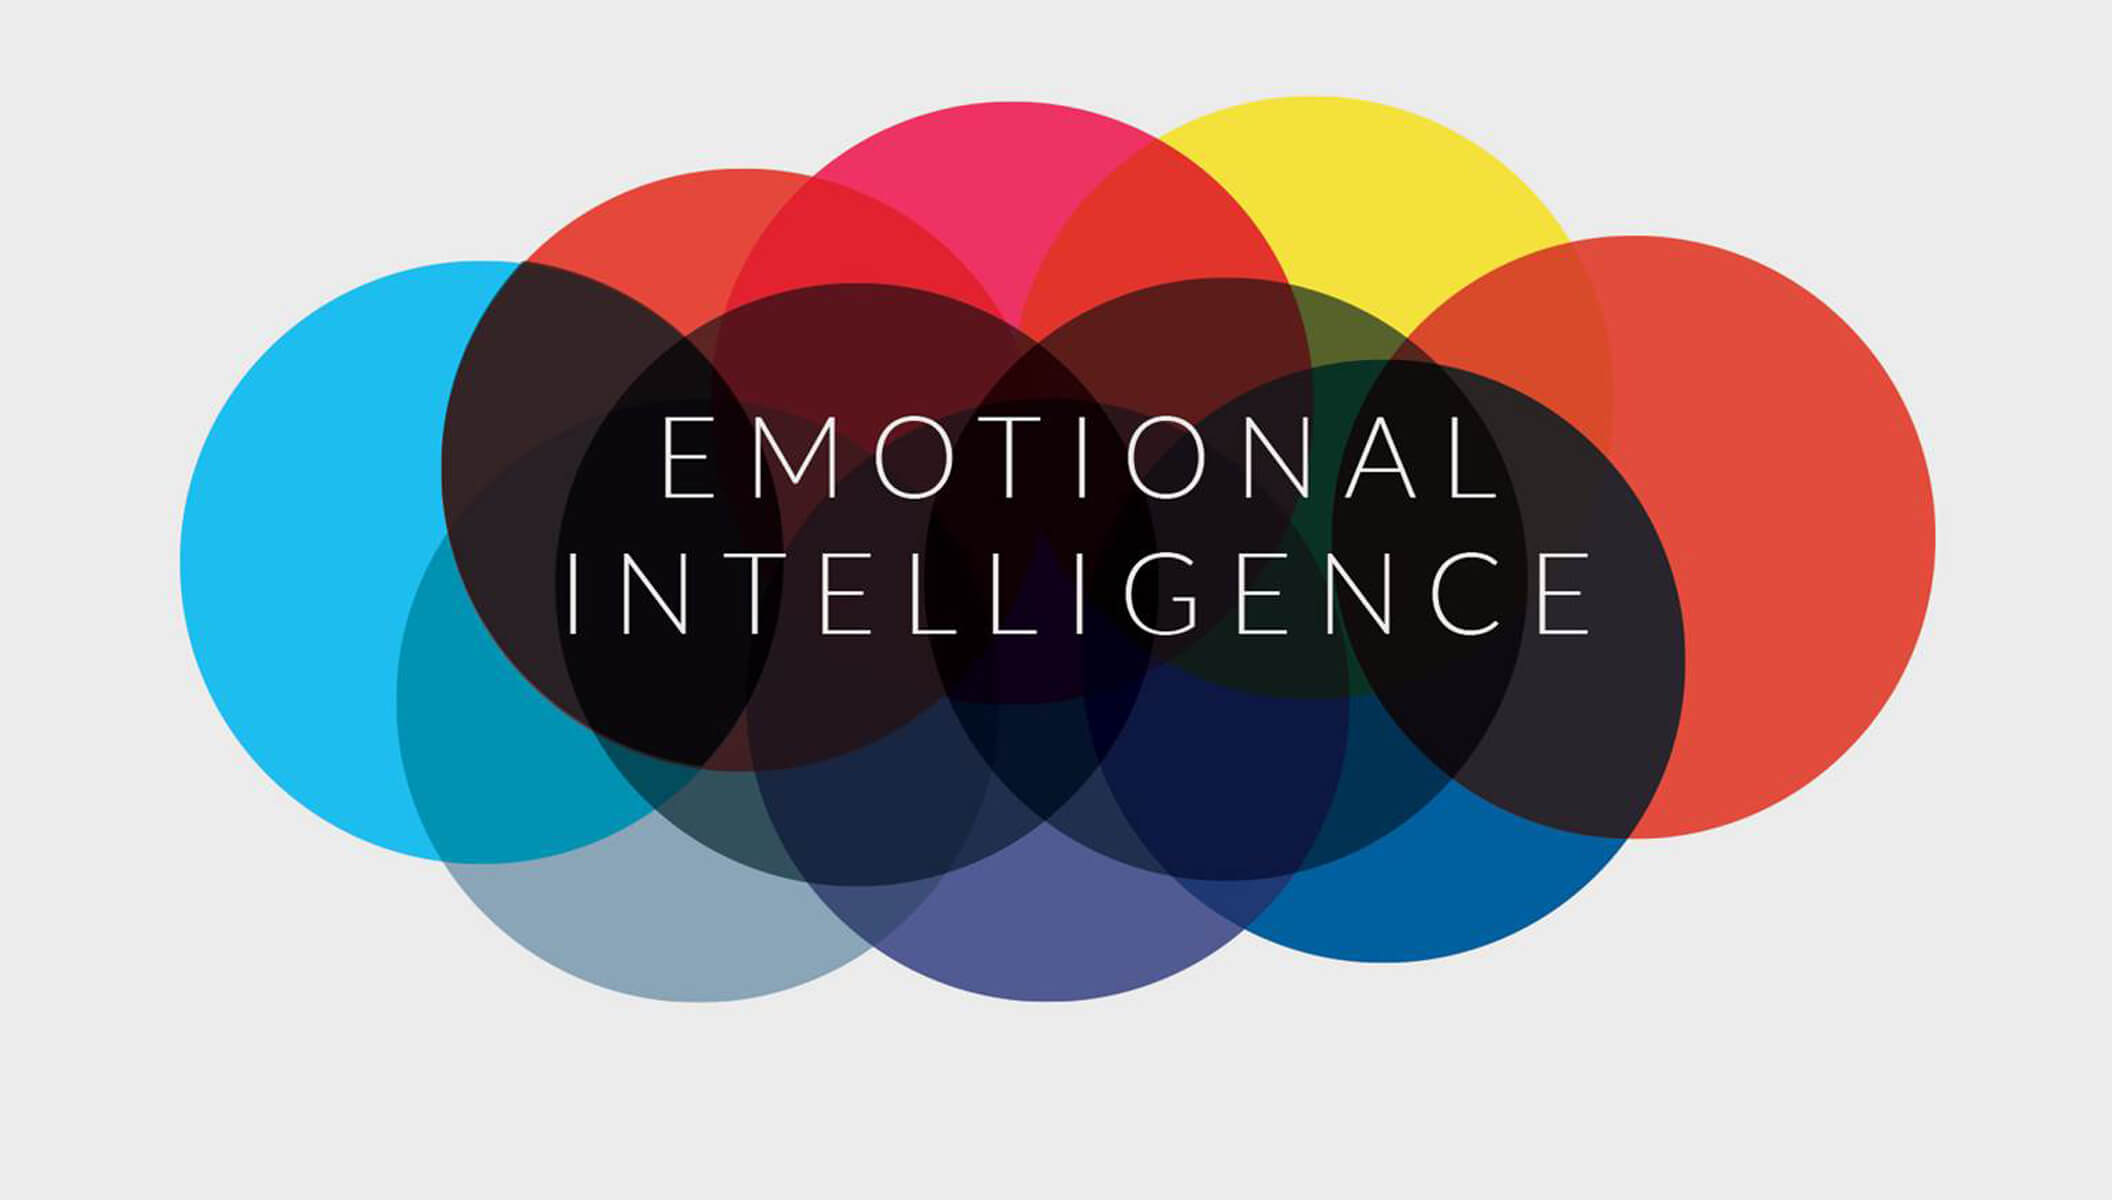 Emotional intelligence